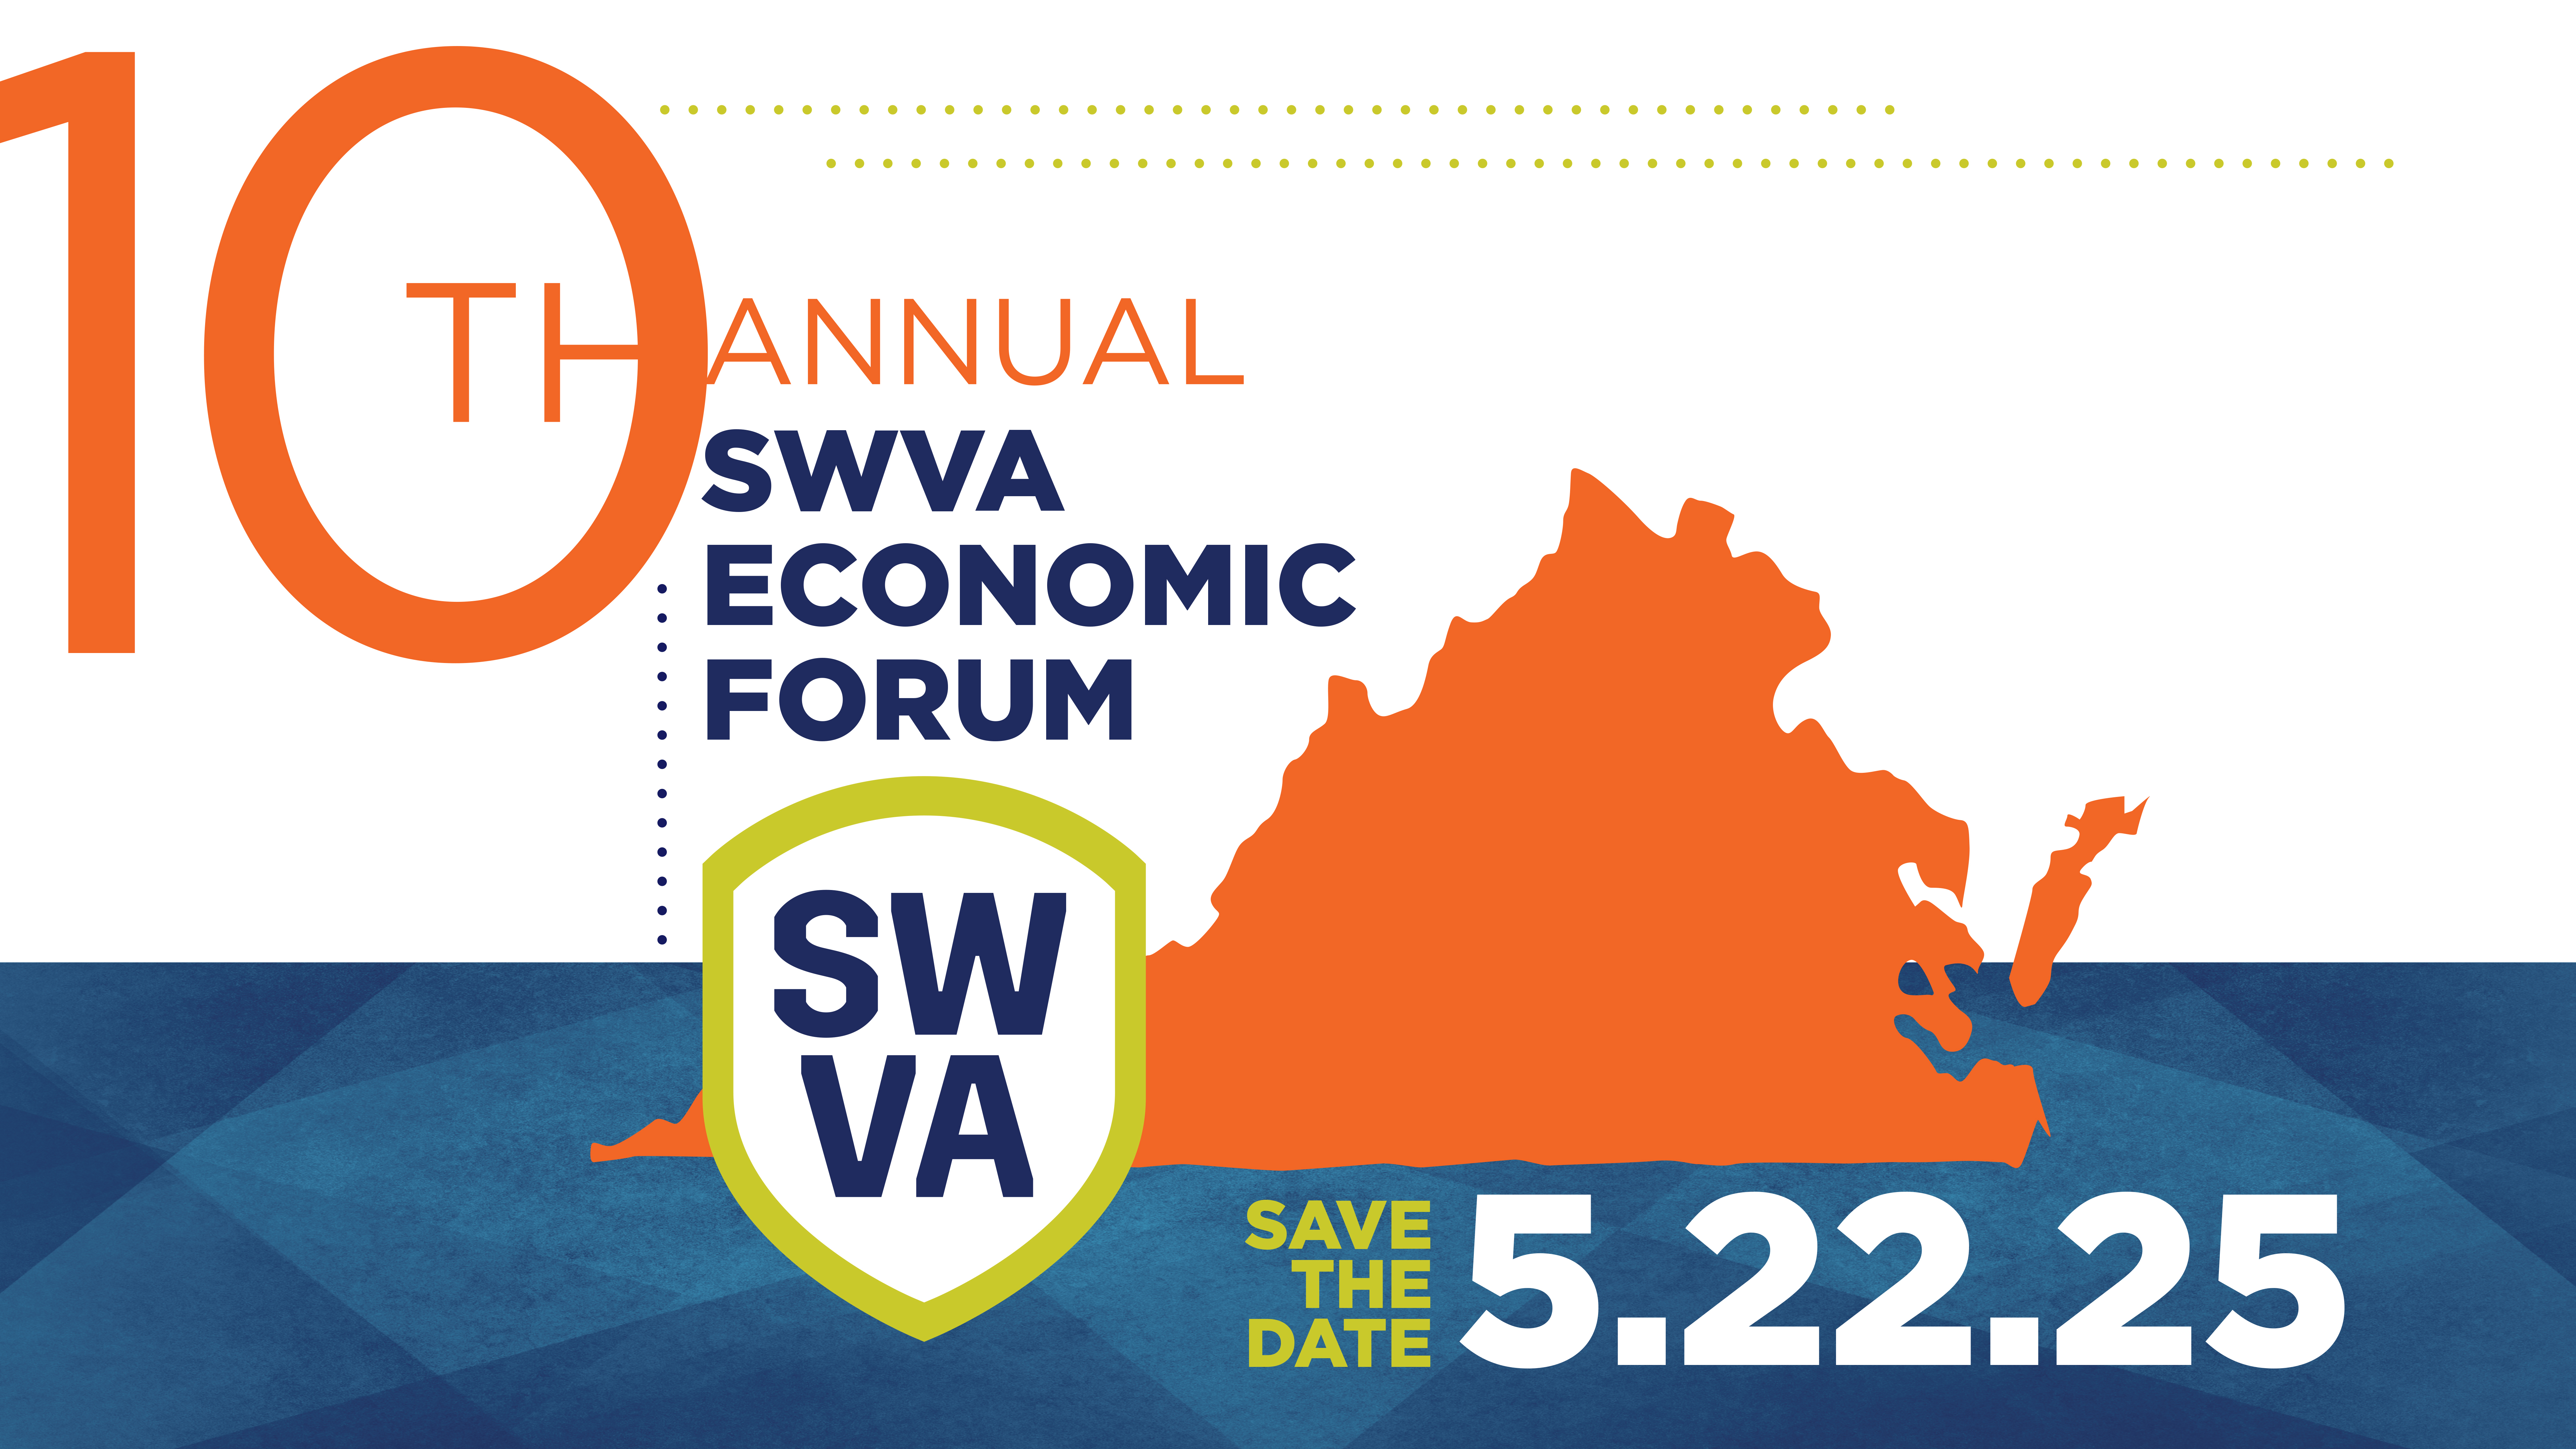 10th Annual SWVA Economic Forum Save the date 5.22.25